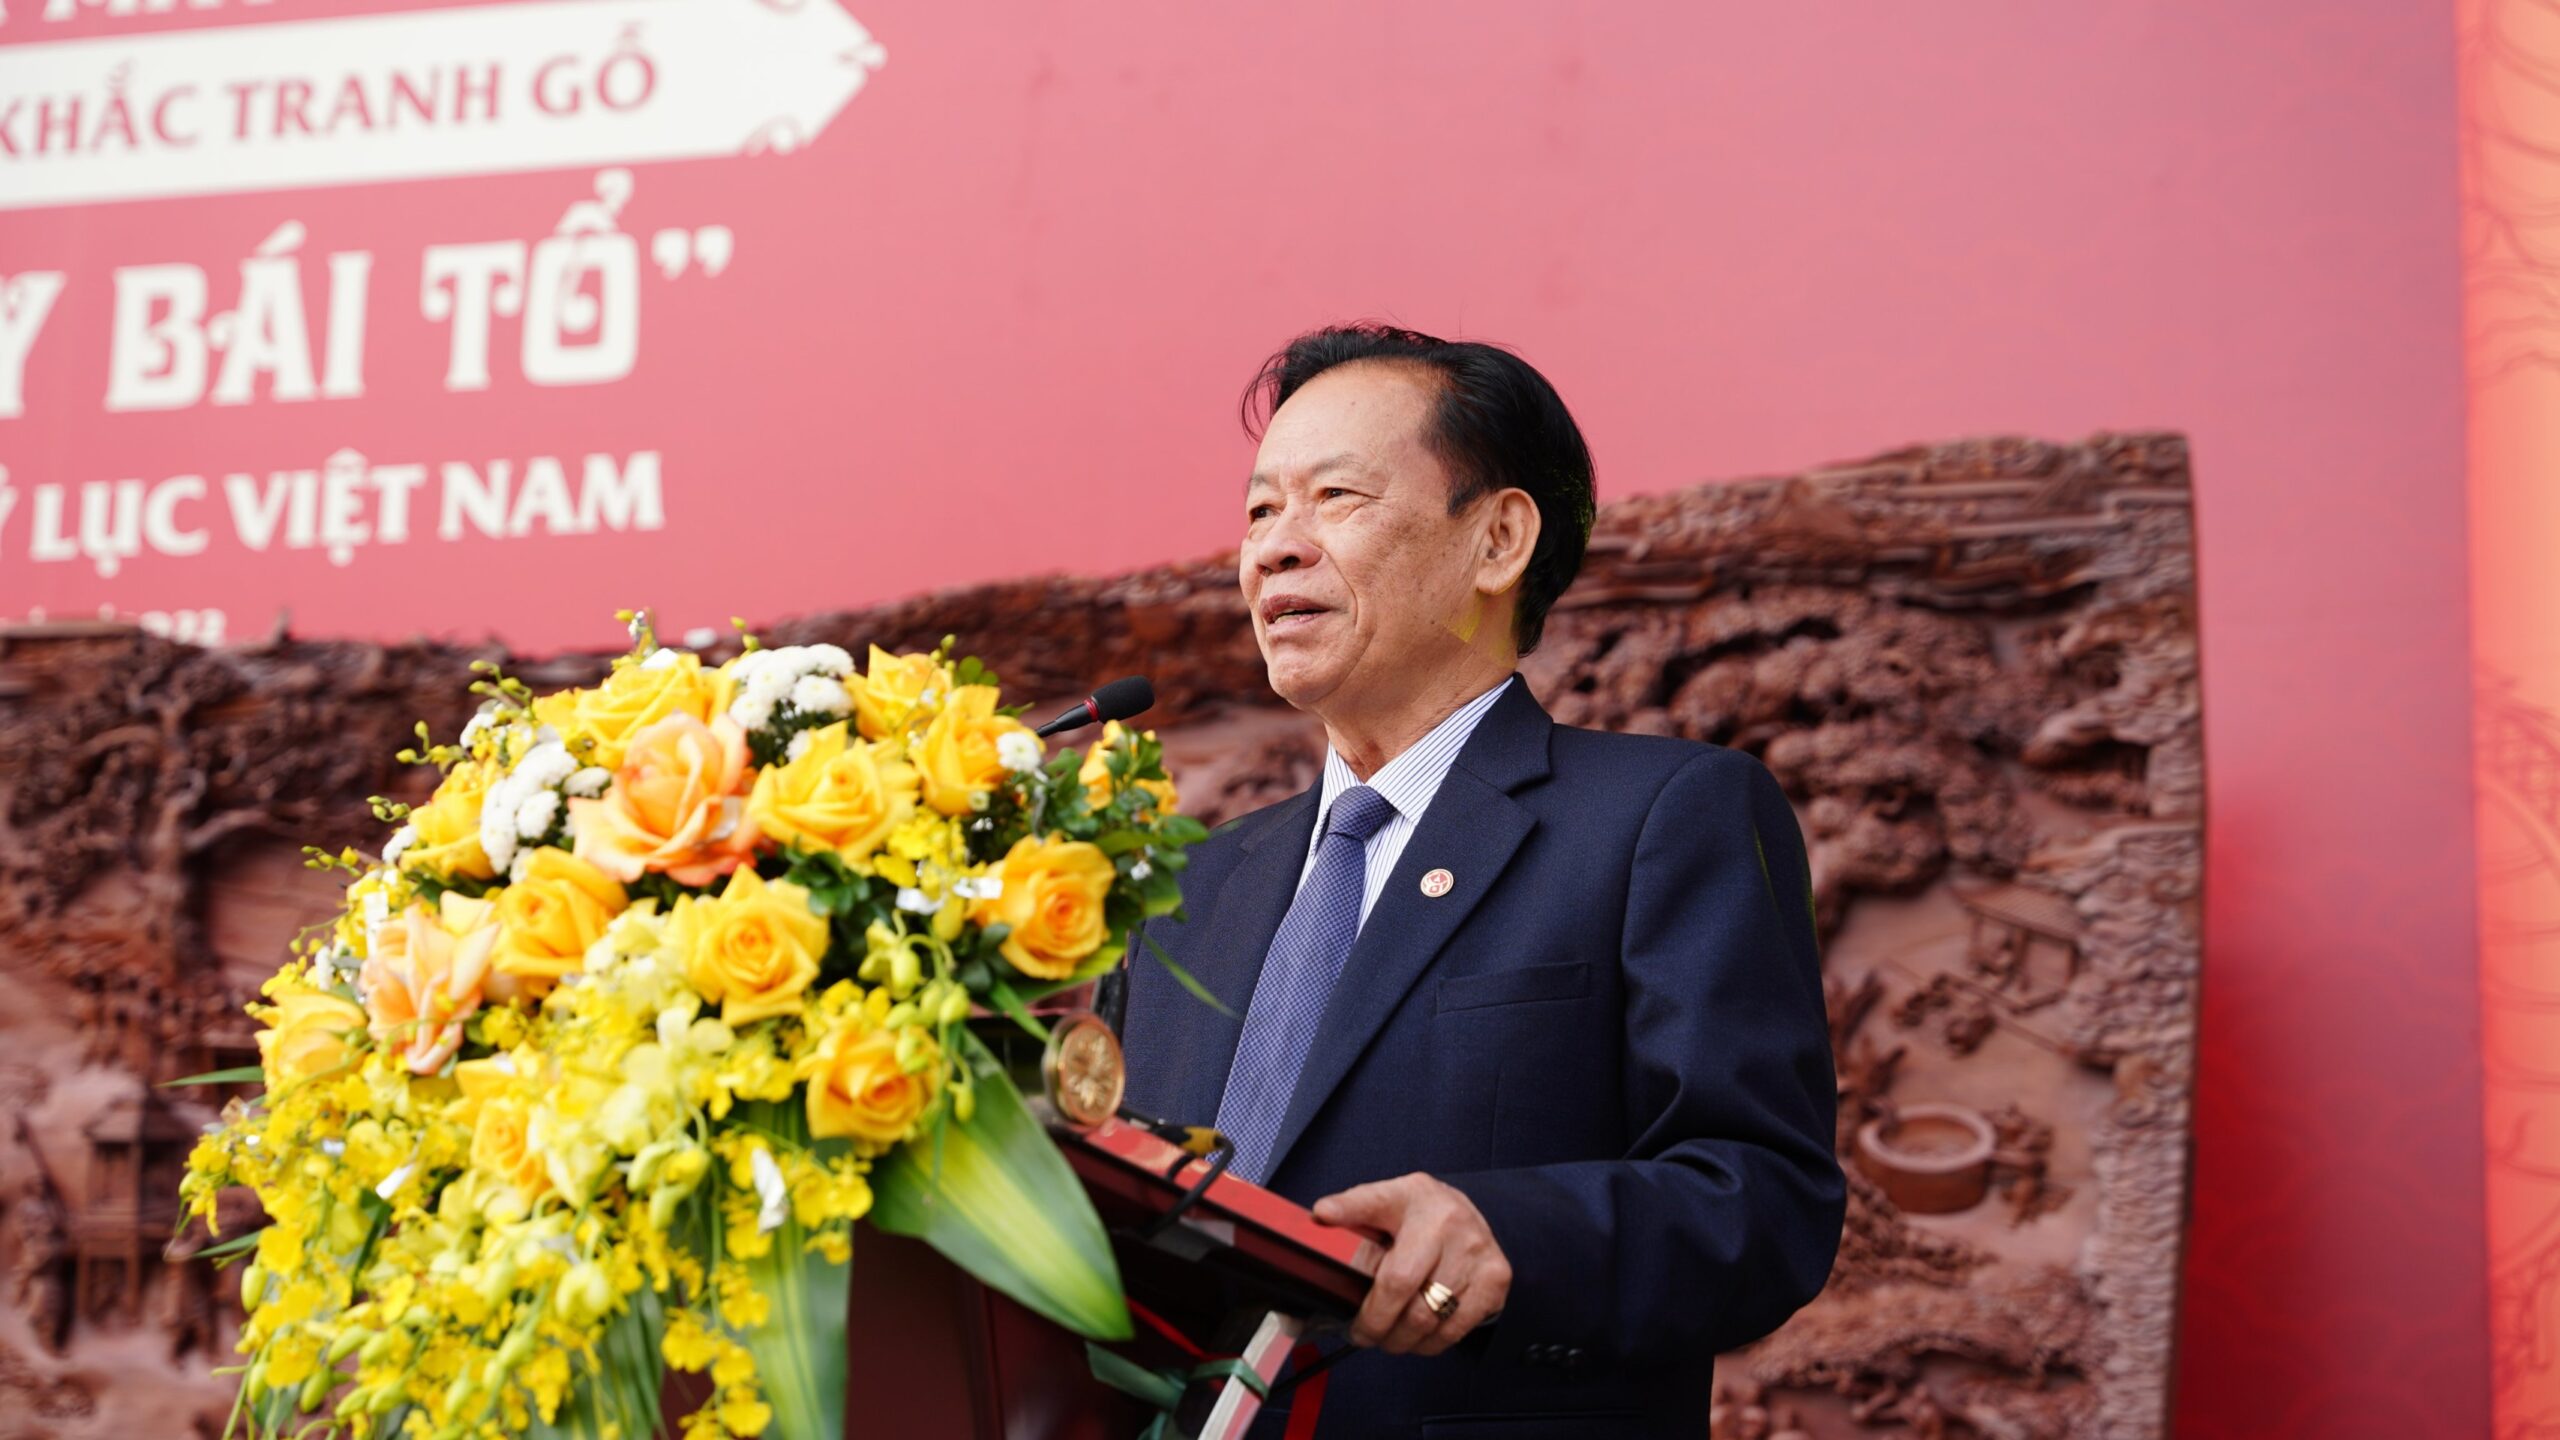 Tiến sĩ Thang Văn Phúc - Nguyên thứ trưởng Bộ nội vụ, Chủ tịch Trung ương Hội Kỷ lục gia Việt Nam phát biểu tại buổi lễ.